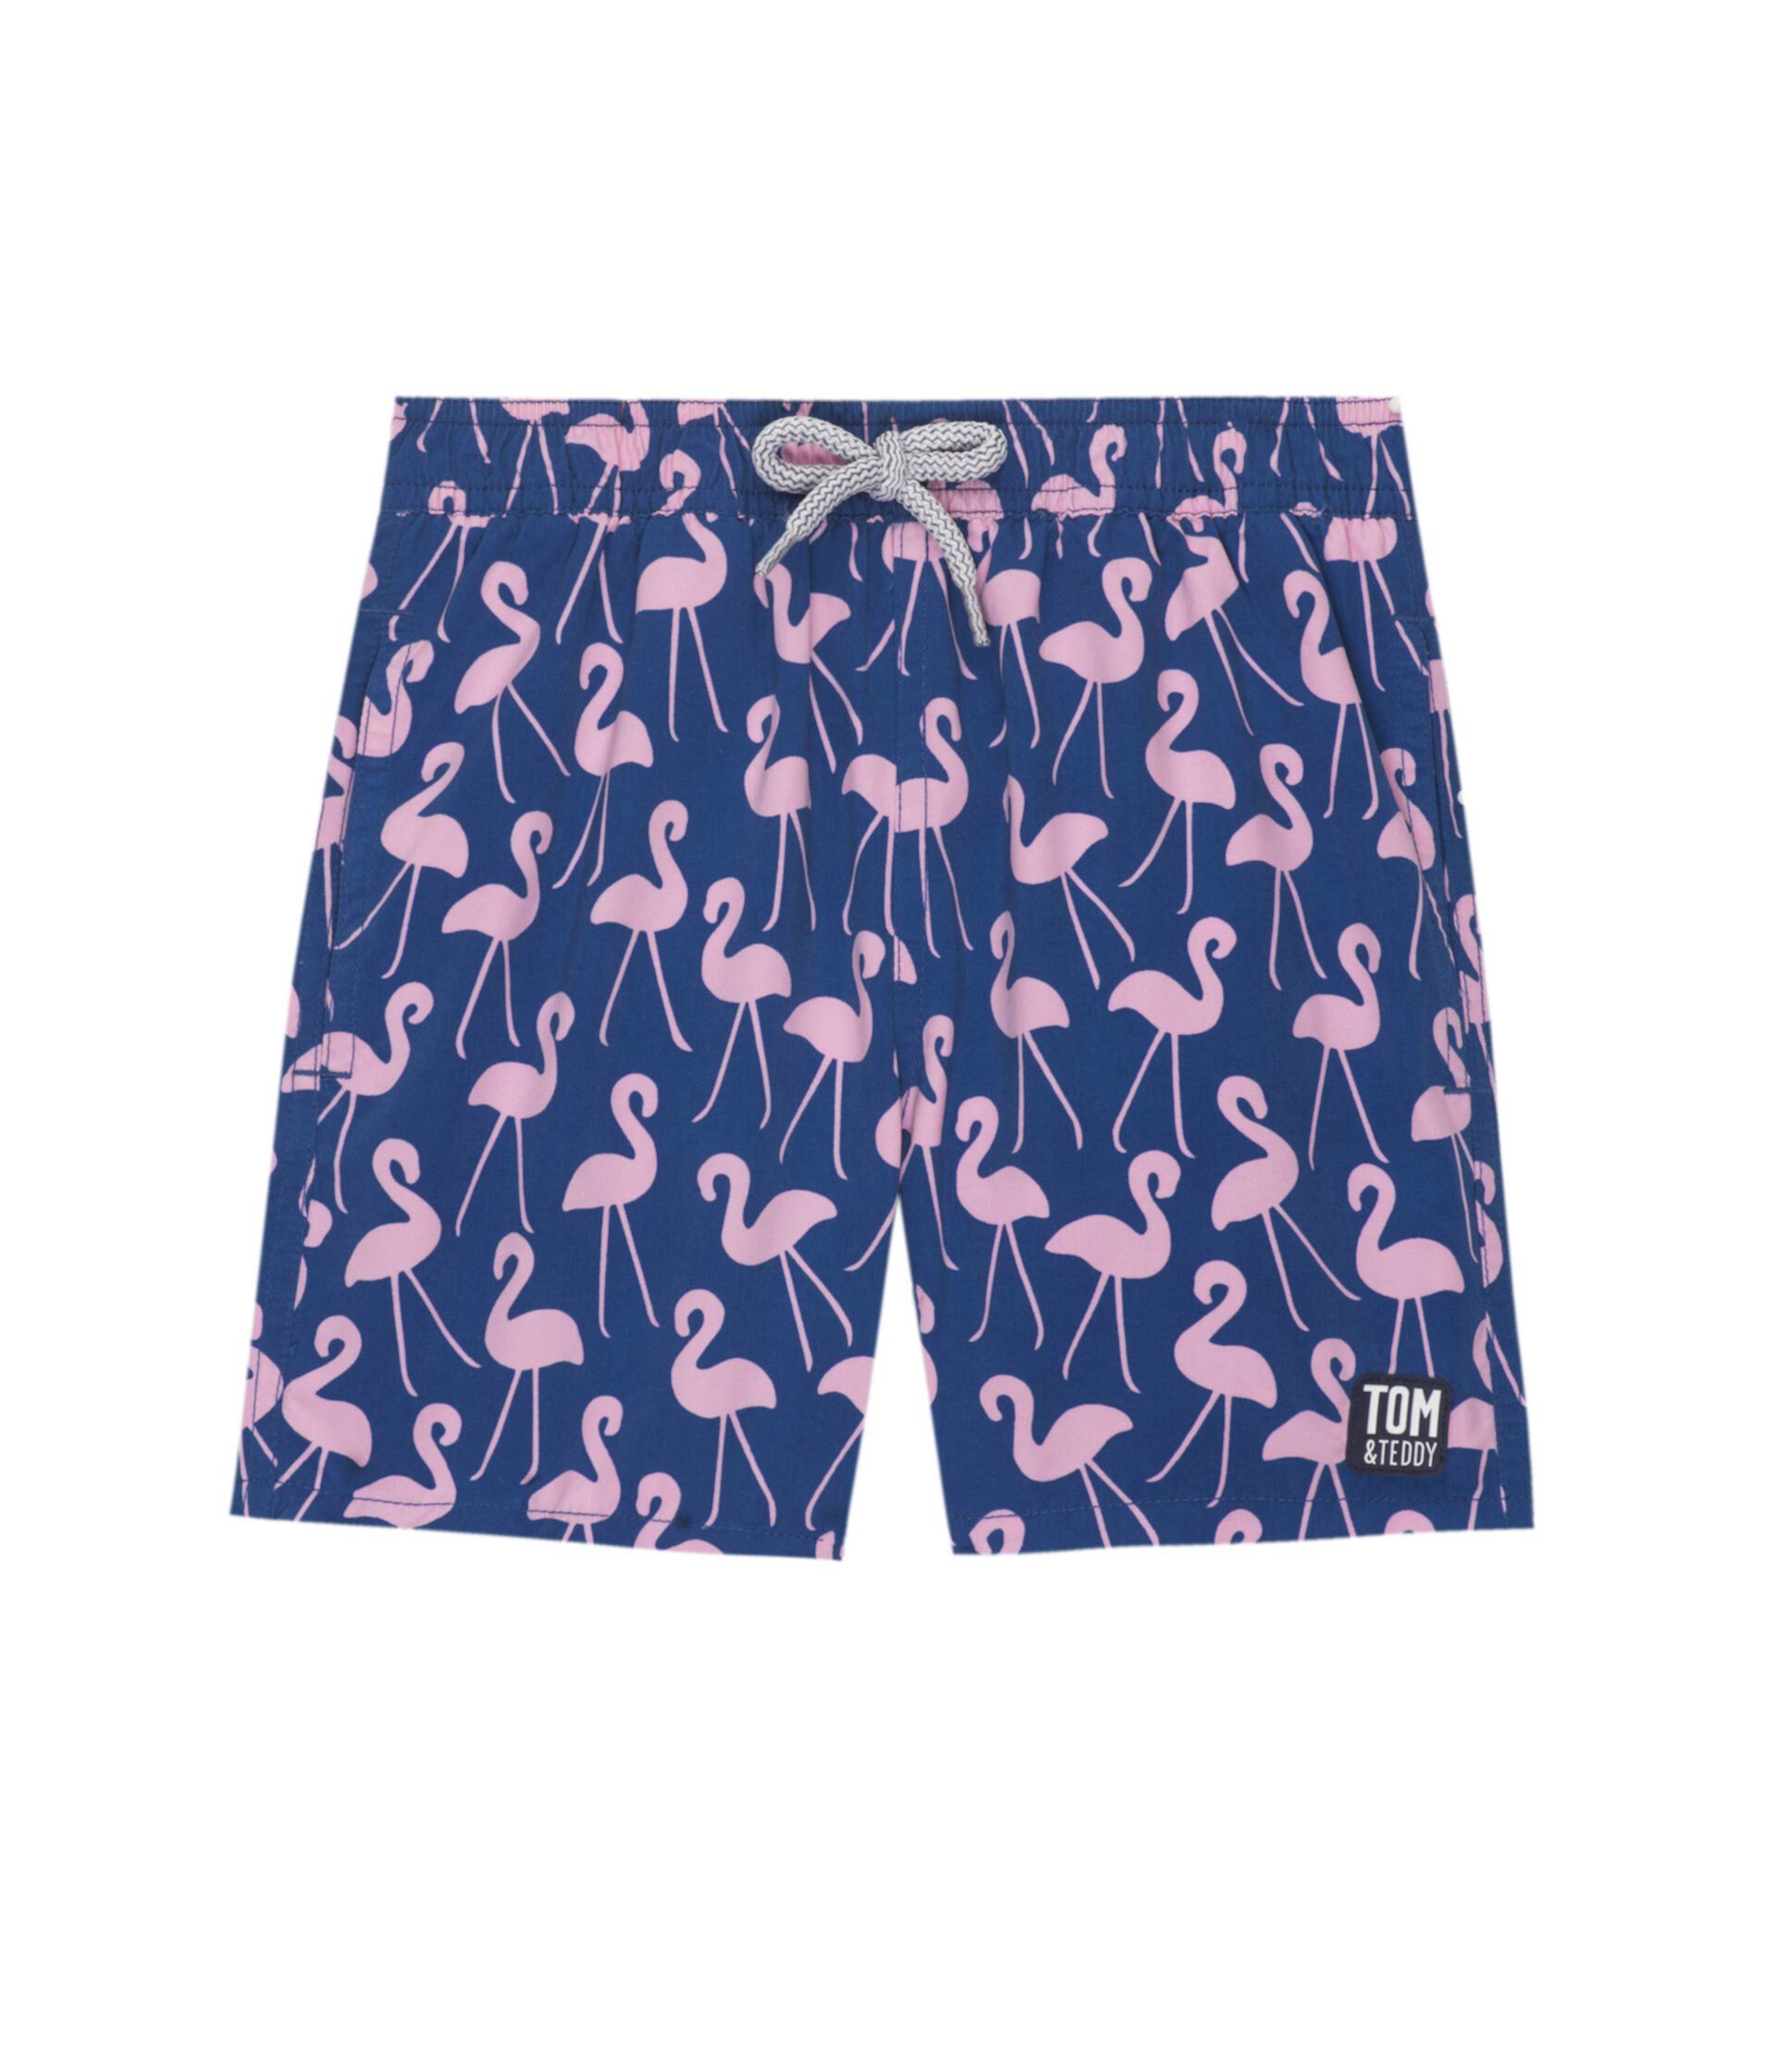 Плавки Flamingo (для маленьких и больших детей) Tom & Teddy